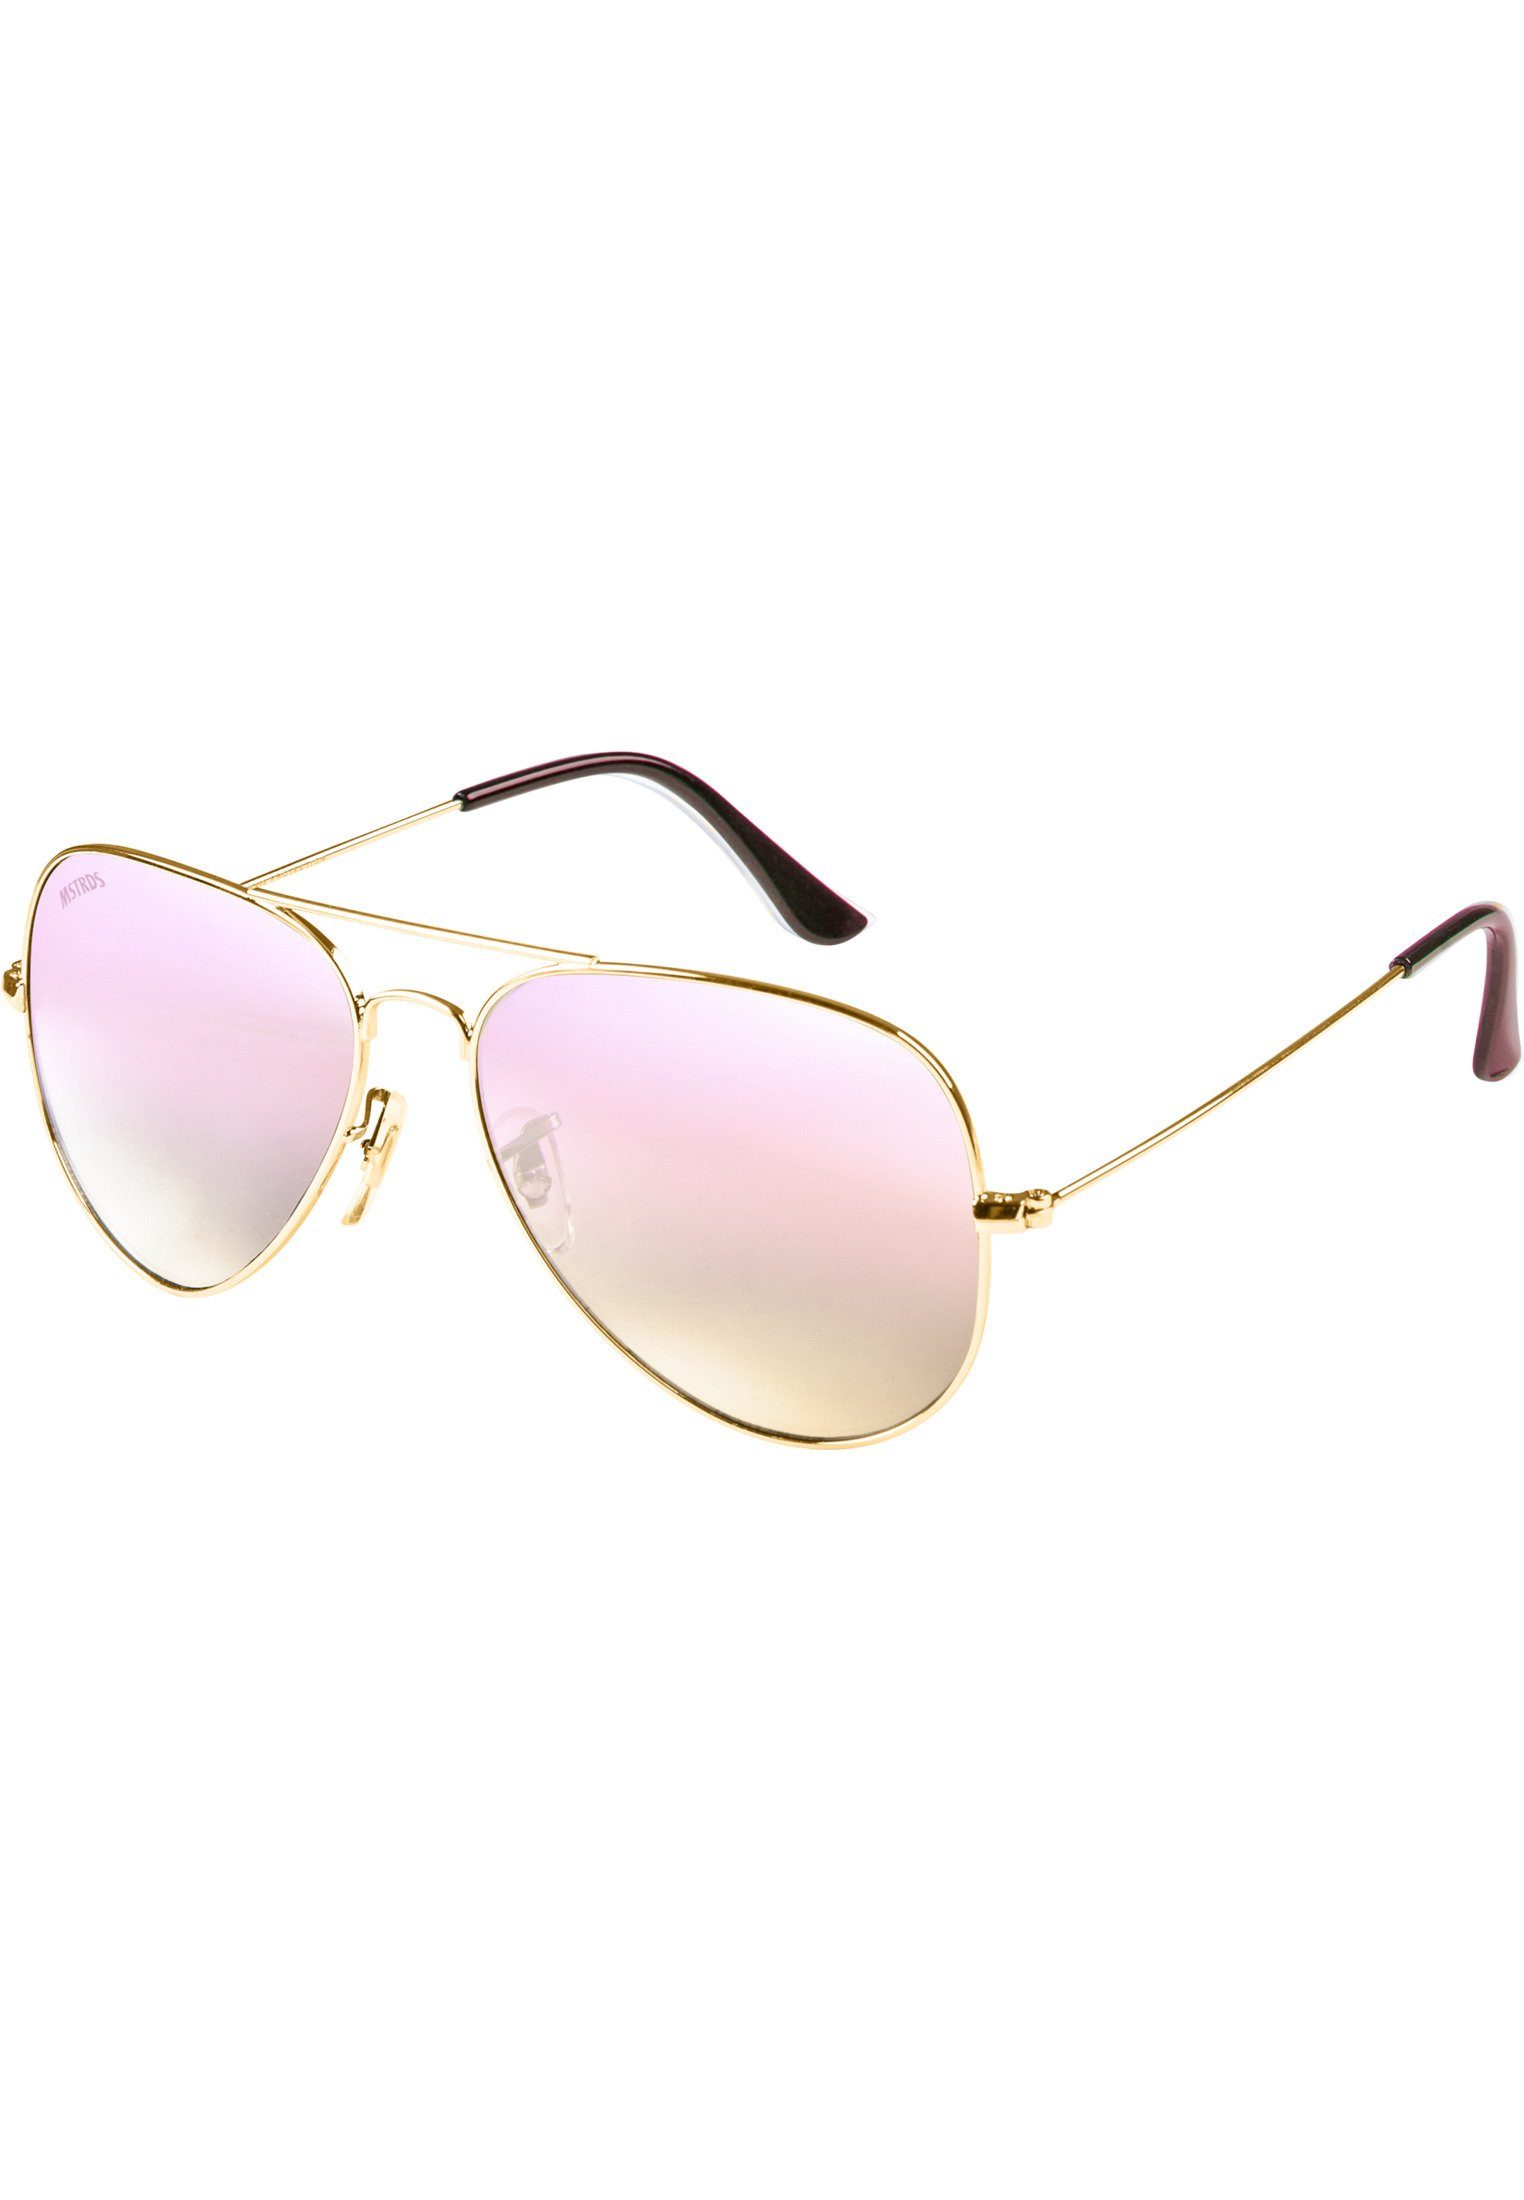 MSTRDS Youth gold/rosé Sunglasses Sonnenbrille PureAv Accessoires